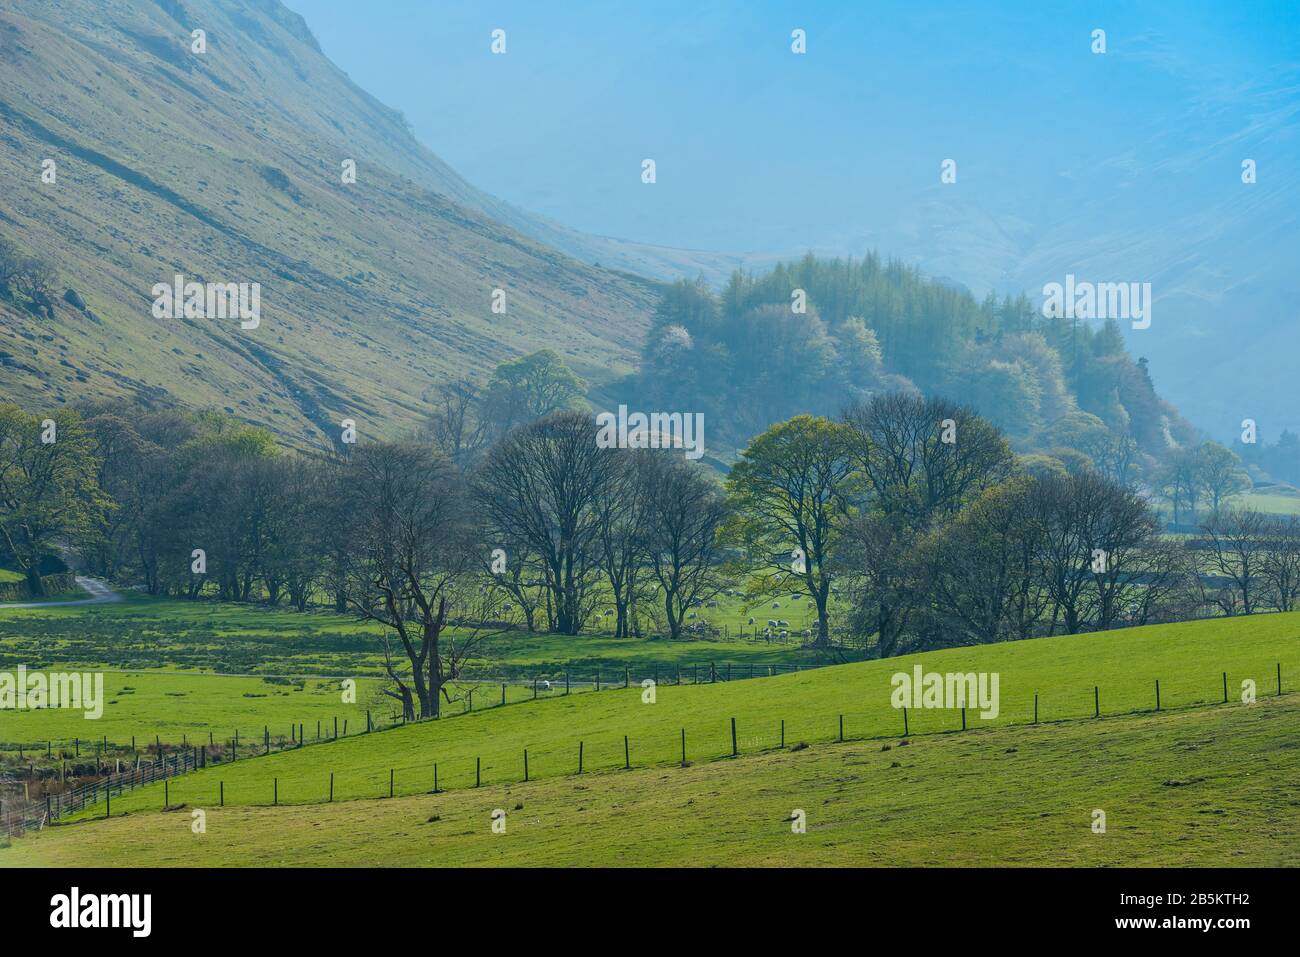 Les moutons paissent sur de l'herbe verte vive pendant la saison de lambing sur les pentes inférieures de Birkhouse Moor près de Glenridding, Lake District, Cumbria, Royaume-Uni, en avril. Banque D'Images